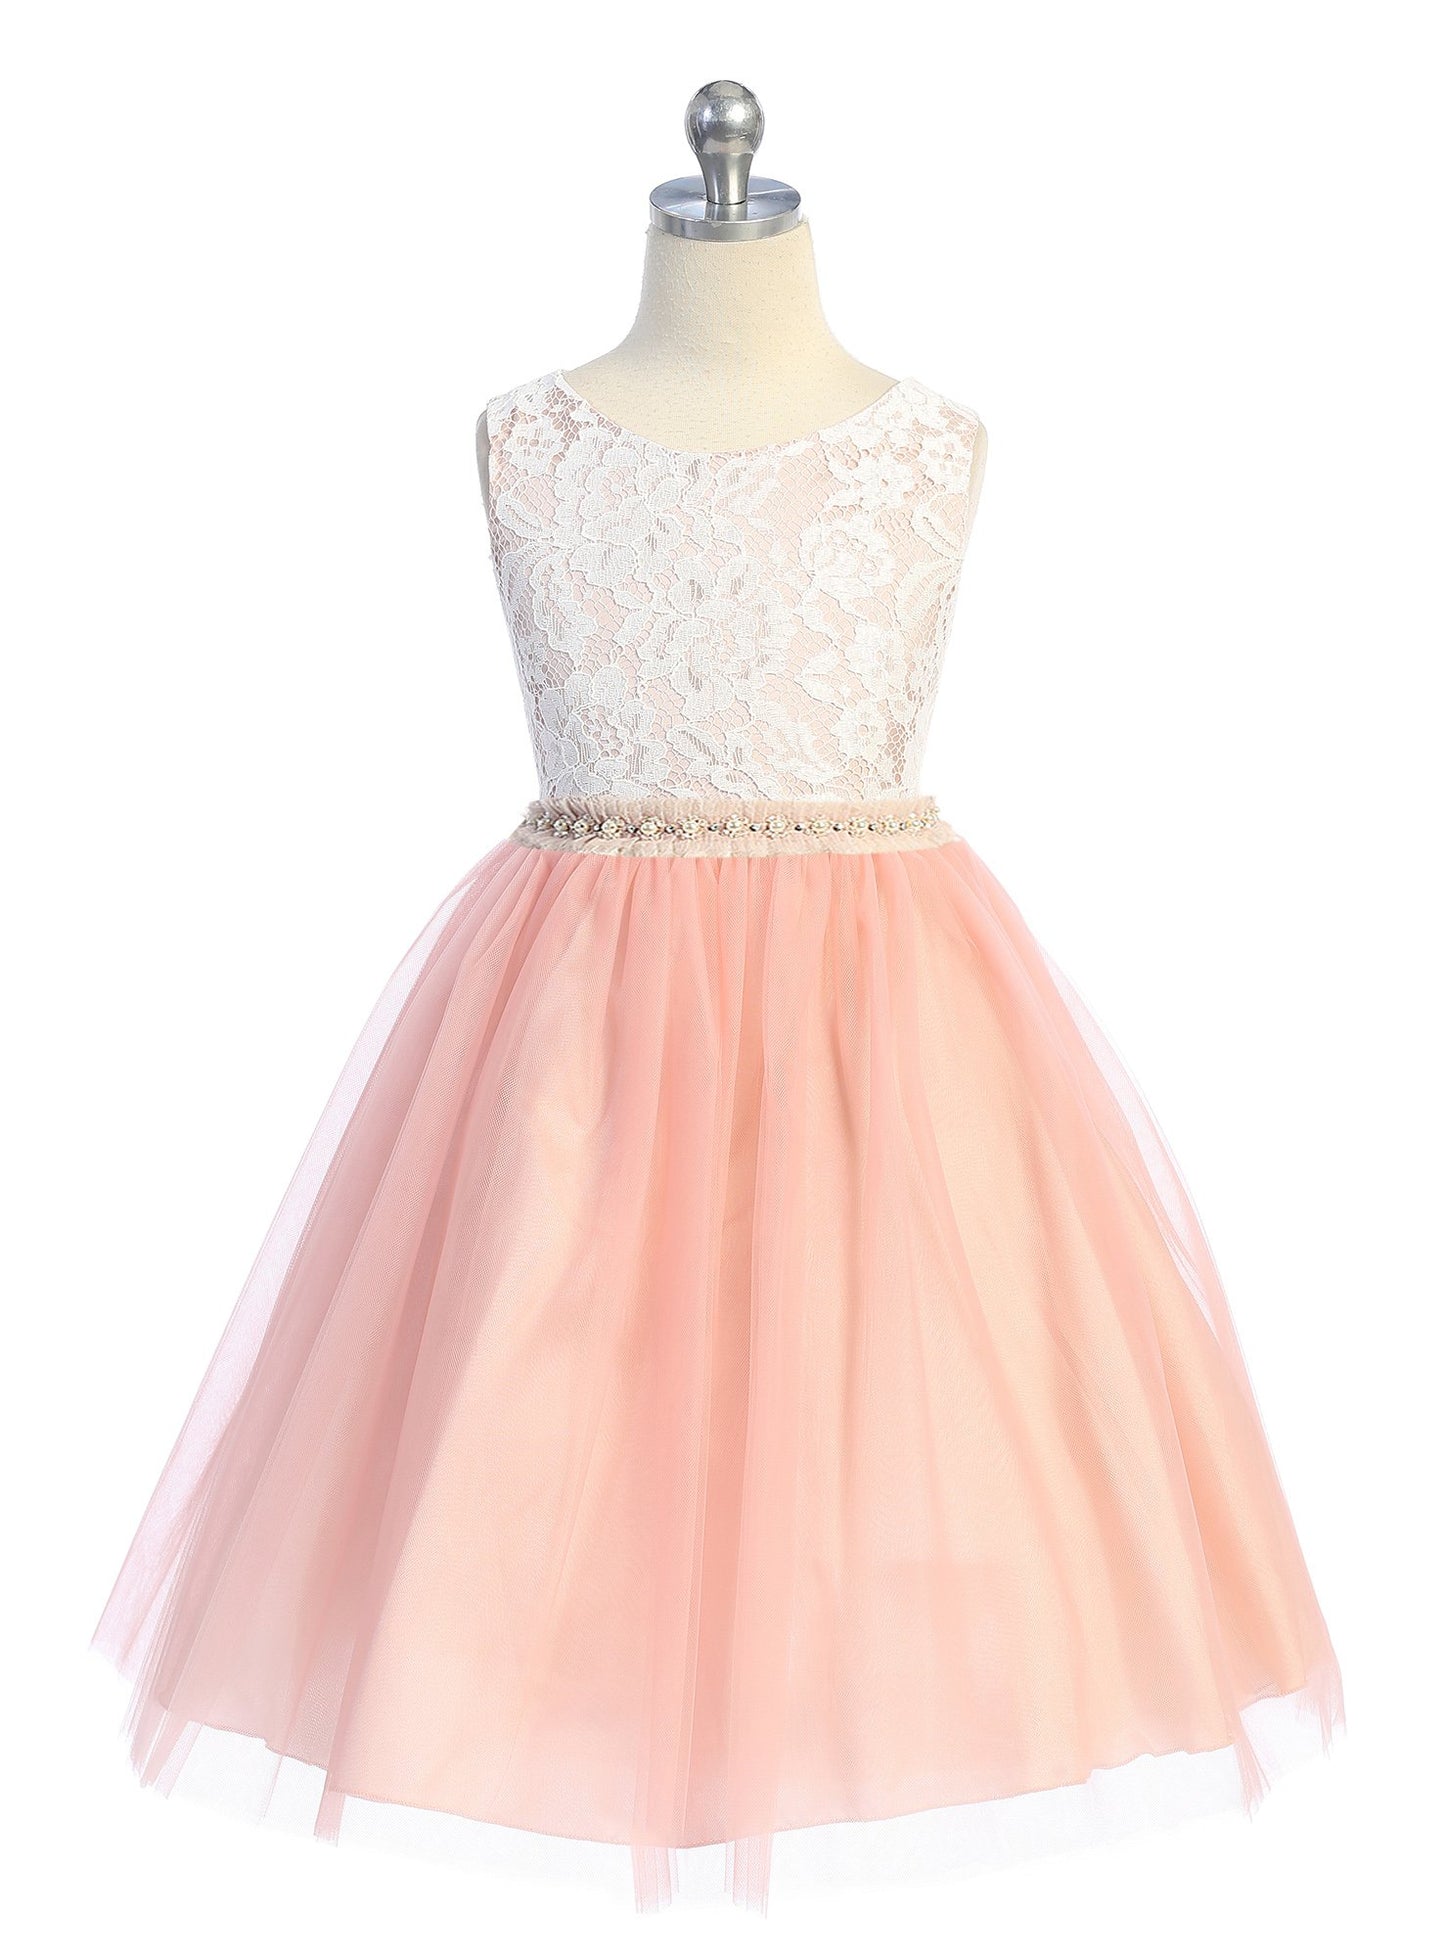 Dress - Lace Dress W/ Mesh Pearl Trim